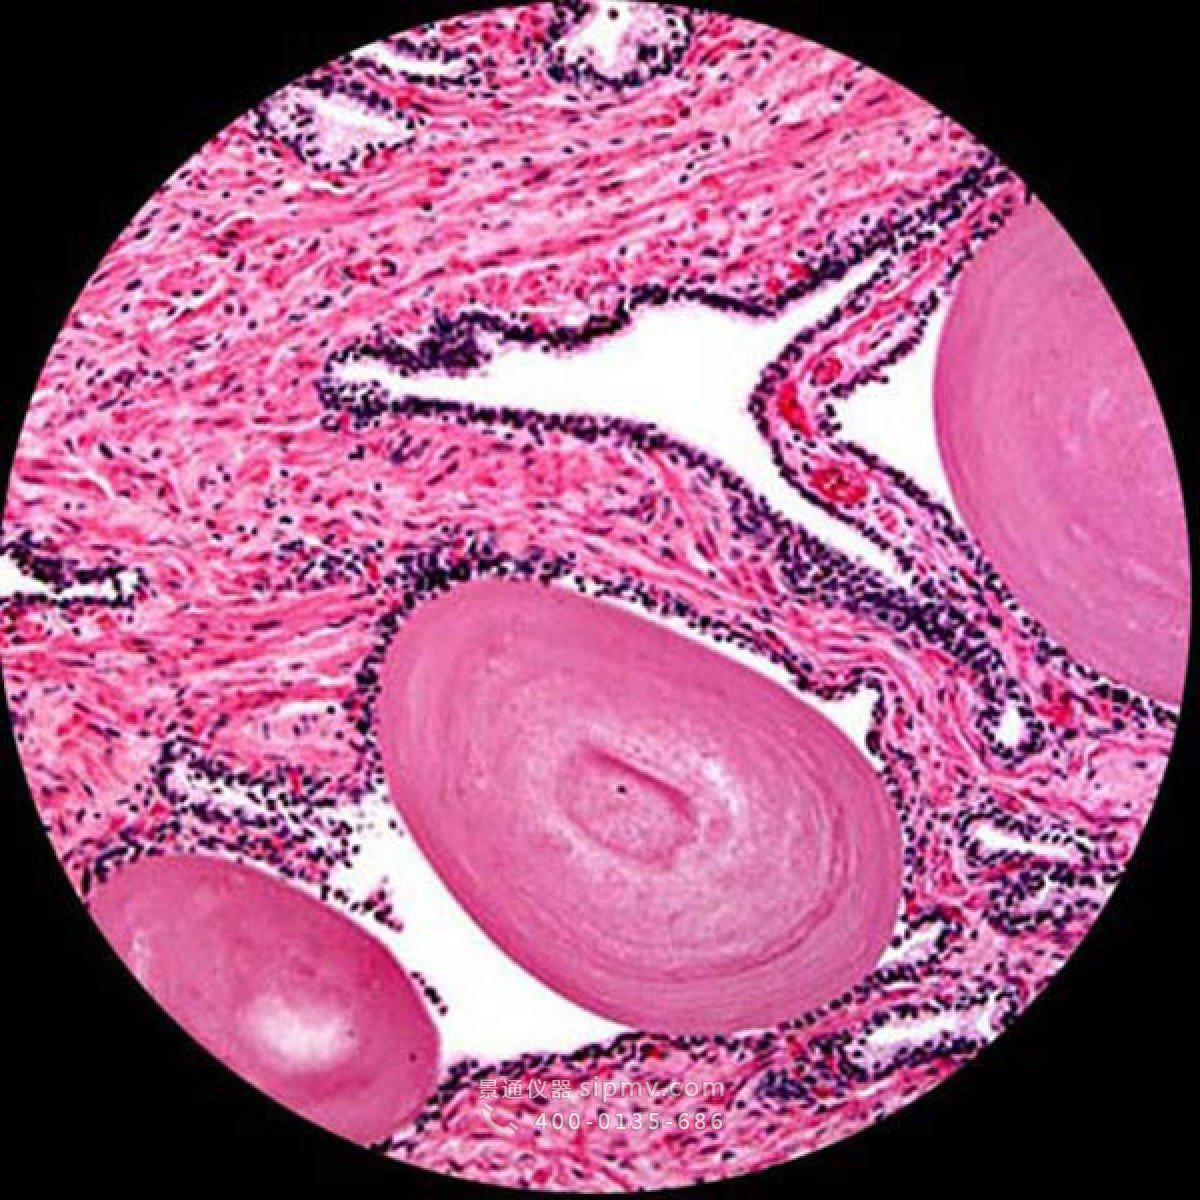 生物显微镜下观察到的细胞